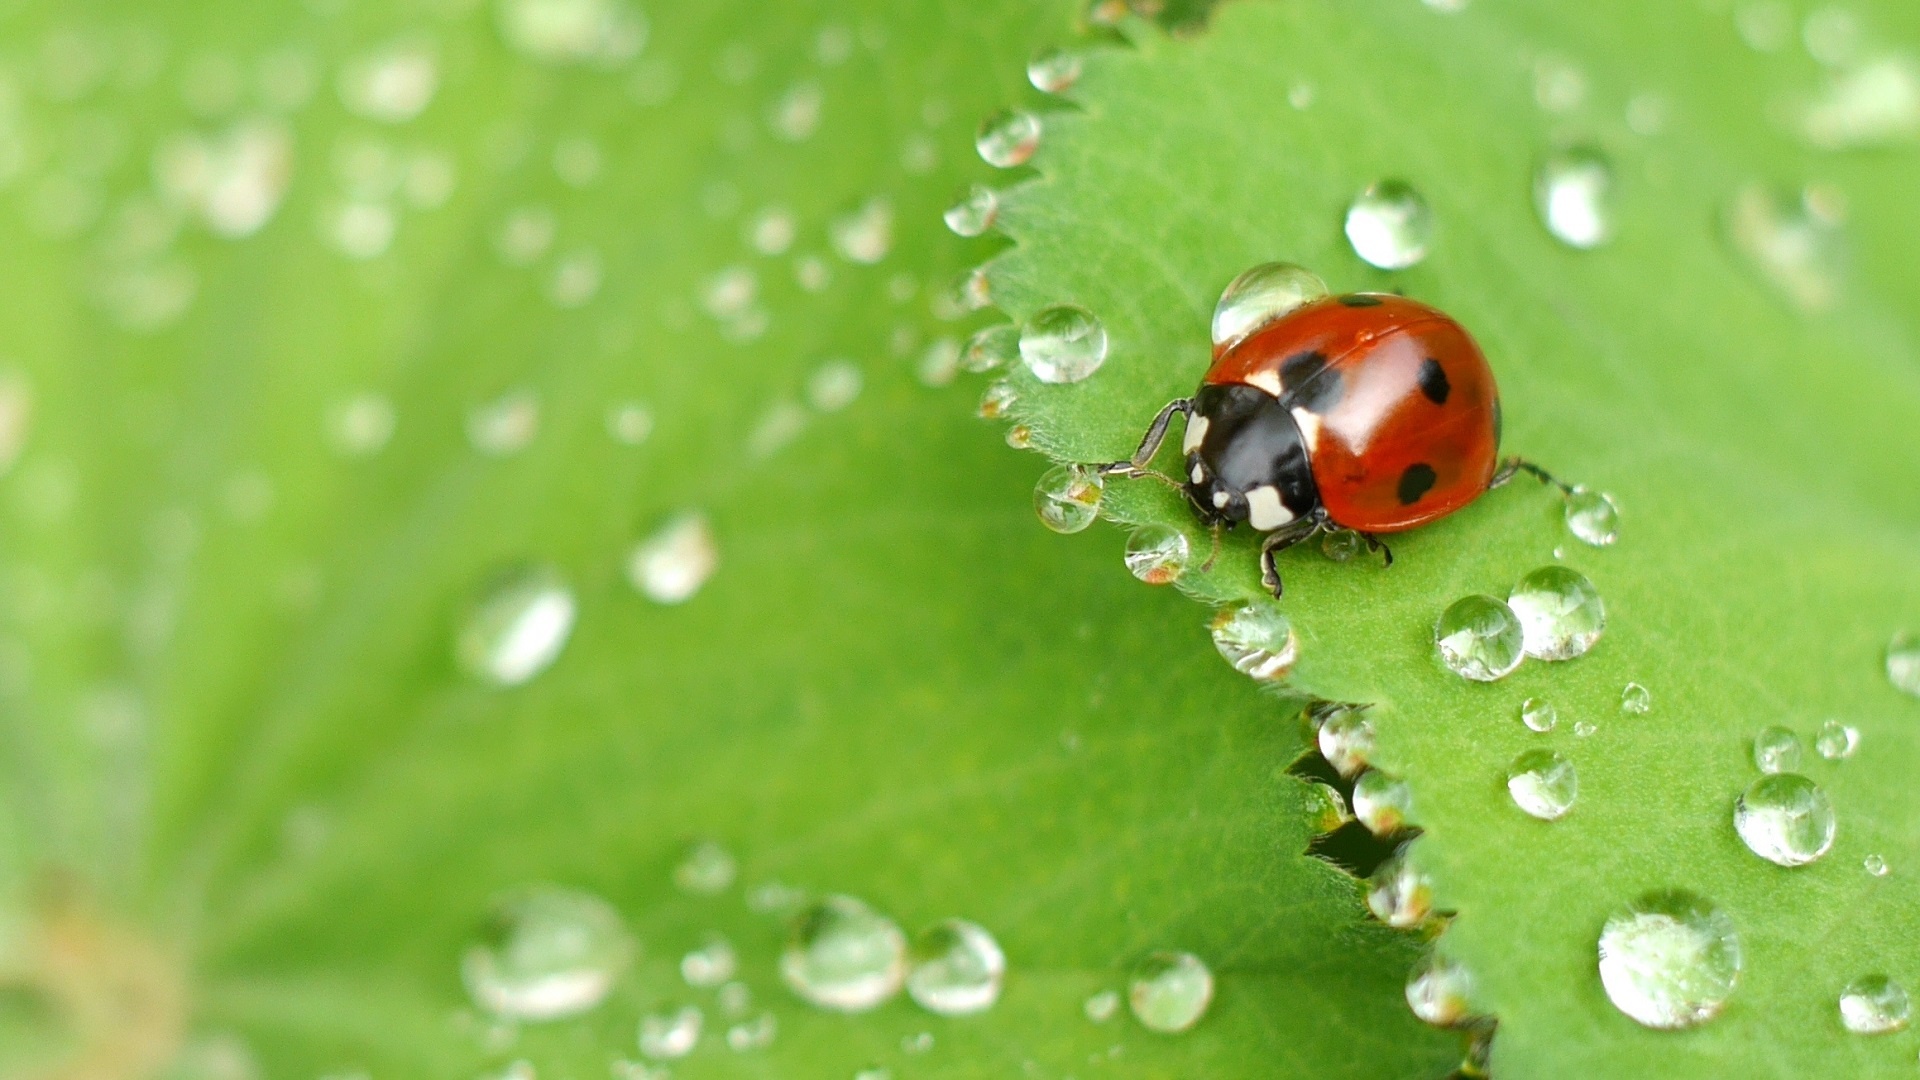 A ladybug crawls on a green leaf after the rain